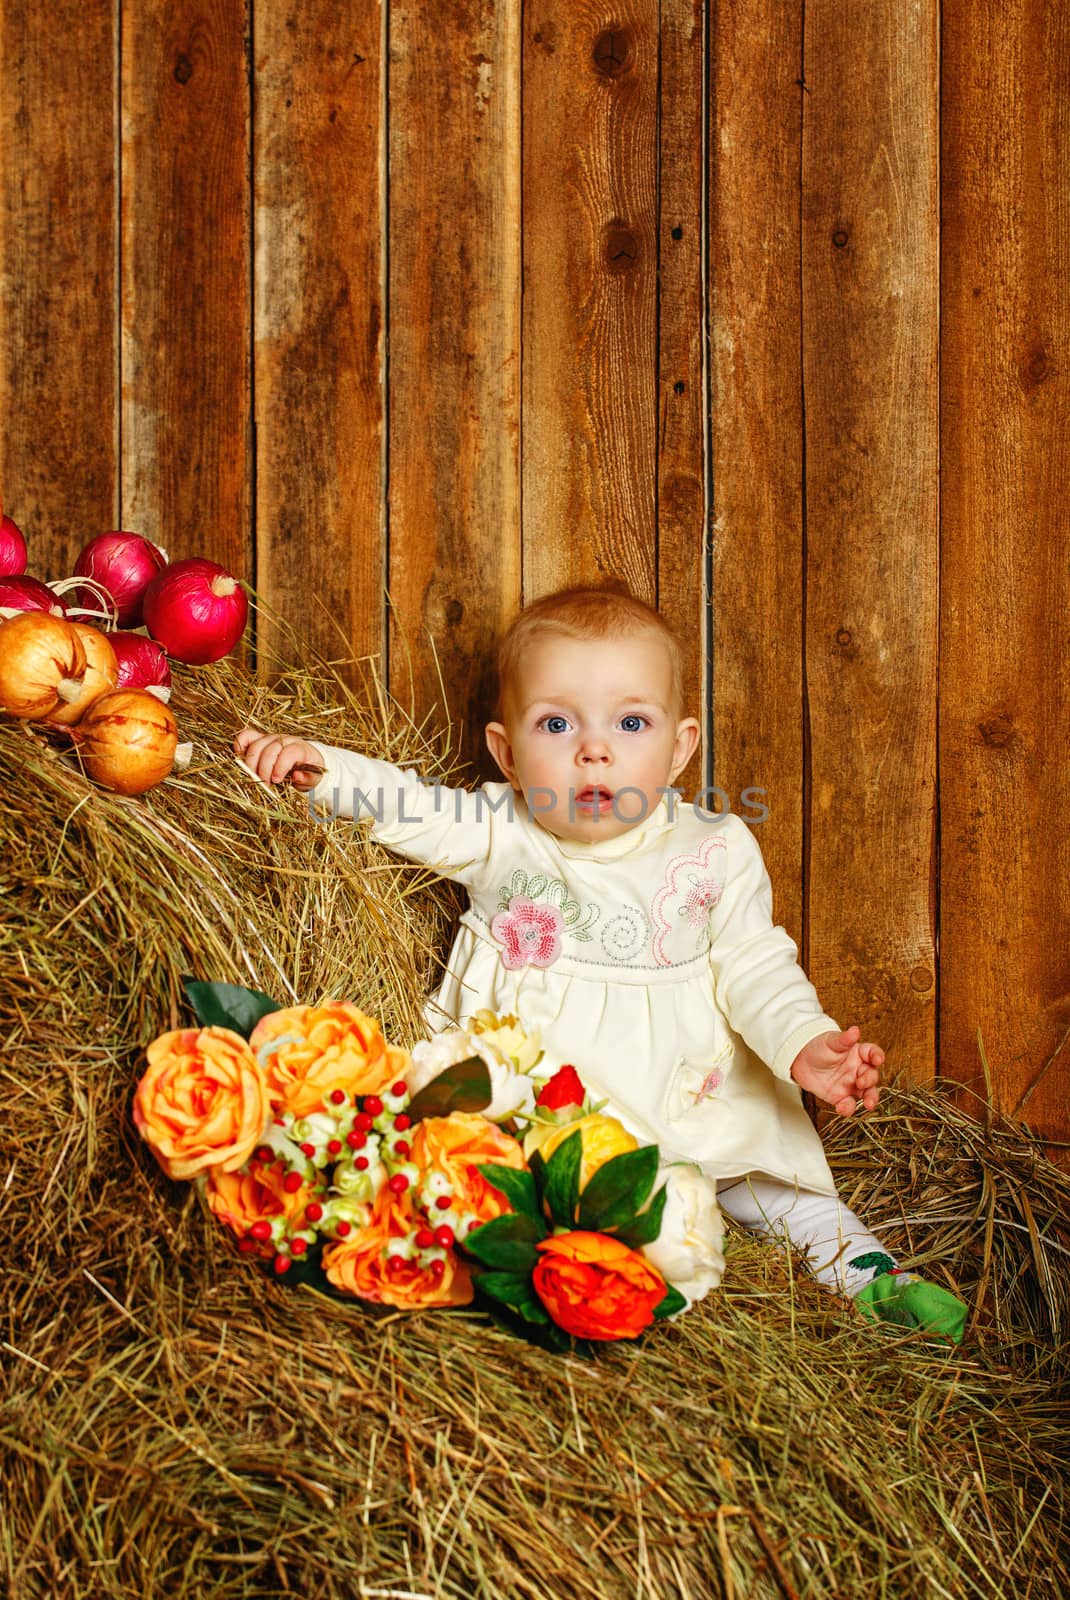 Baby in hay by Vagengeym